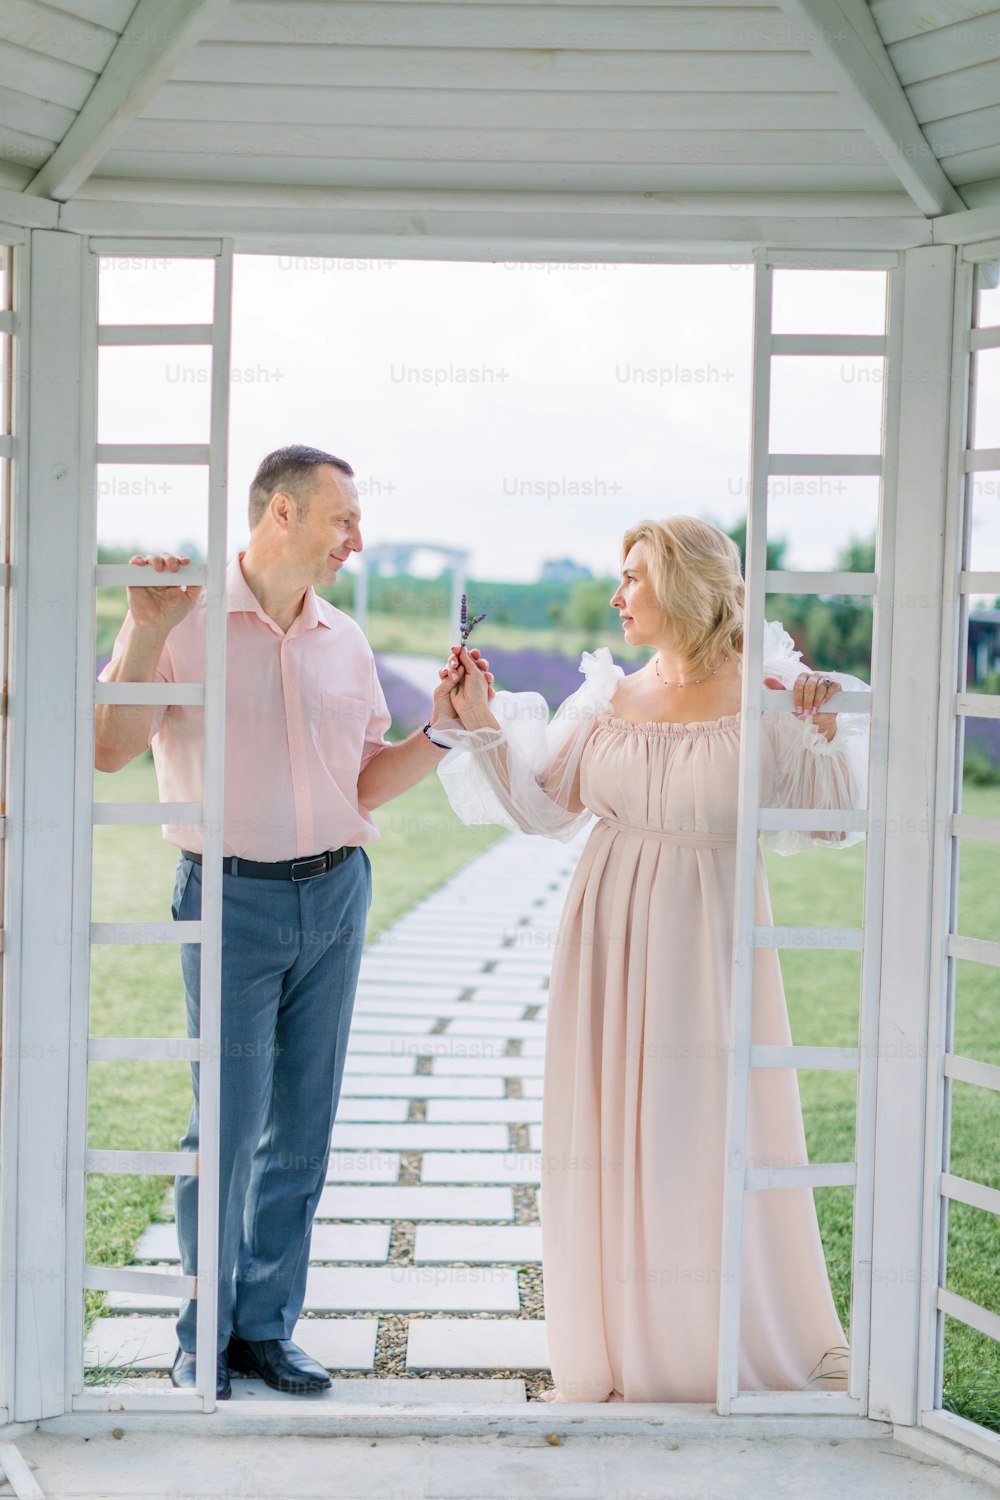 Ganzkörperporträt eines reifen, eleganten Paares, das außerhalb eines weißen Holzpavillons steht, sich gegenseitig anschaut und blühenden Lavendel in den Händen hält